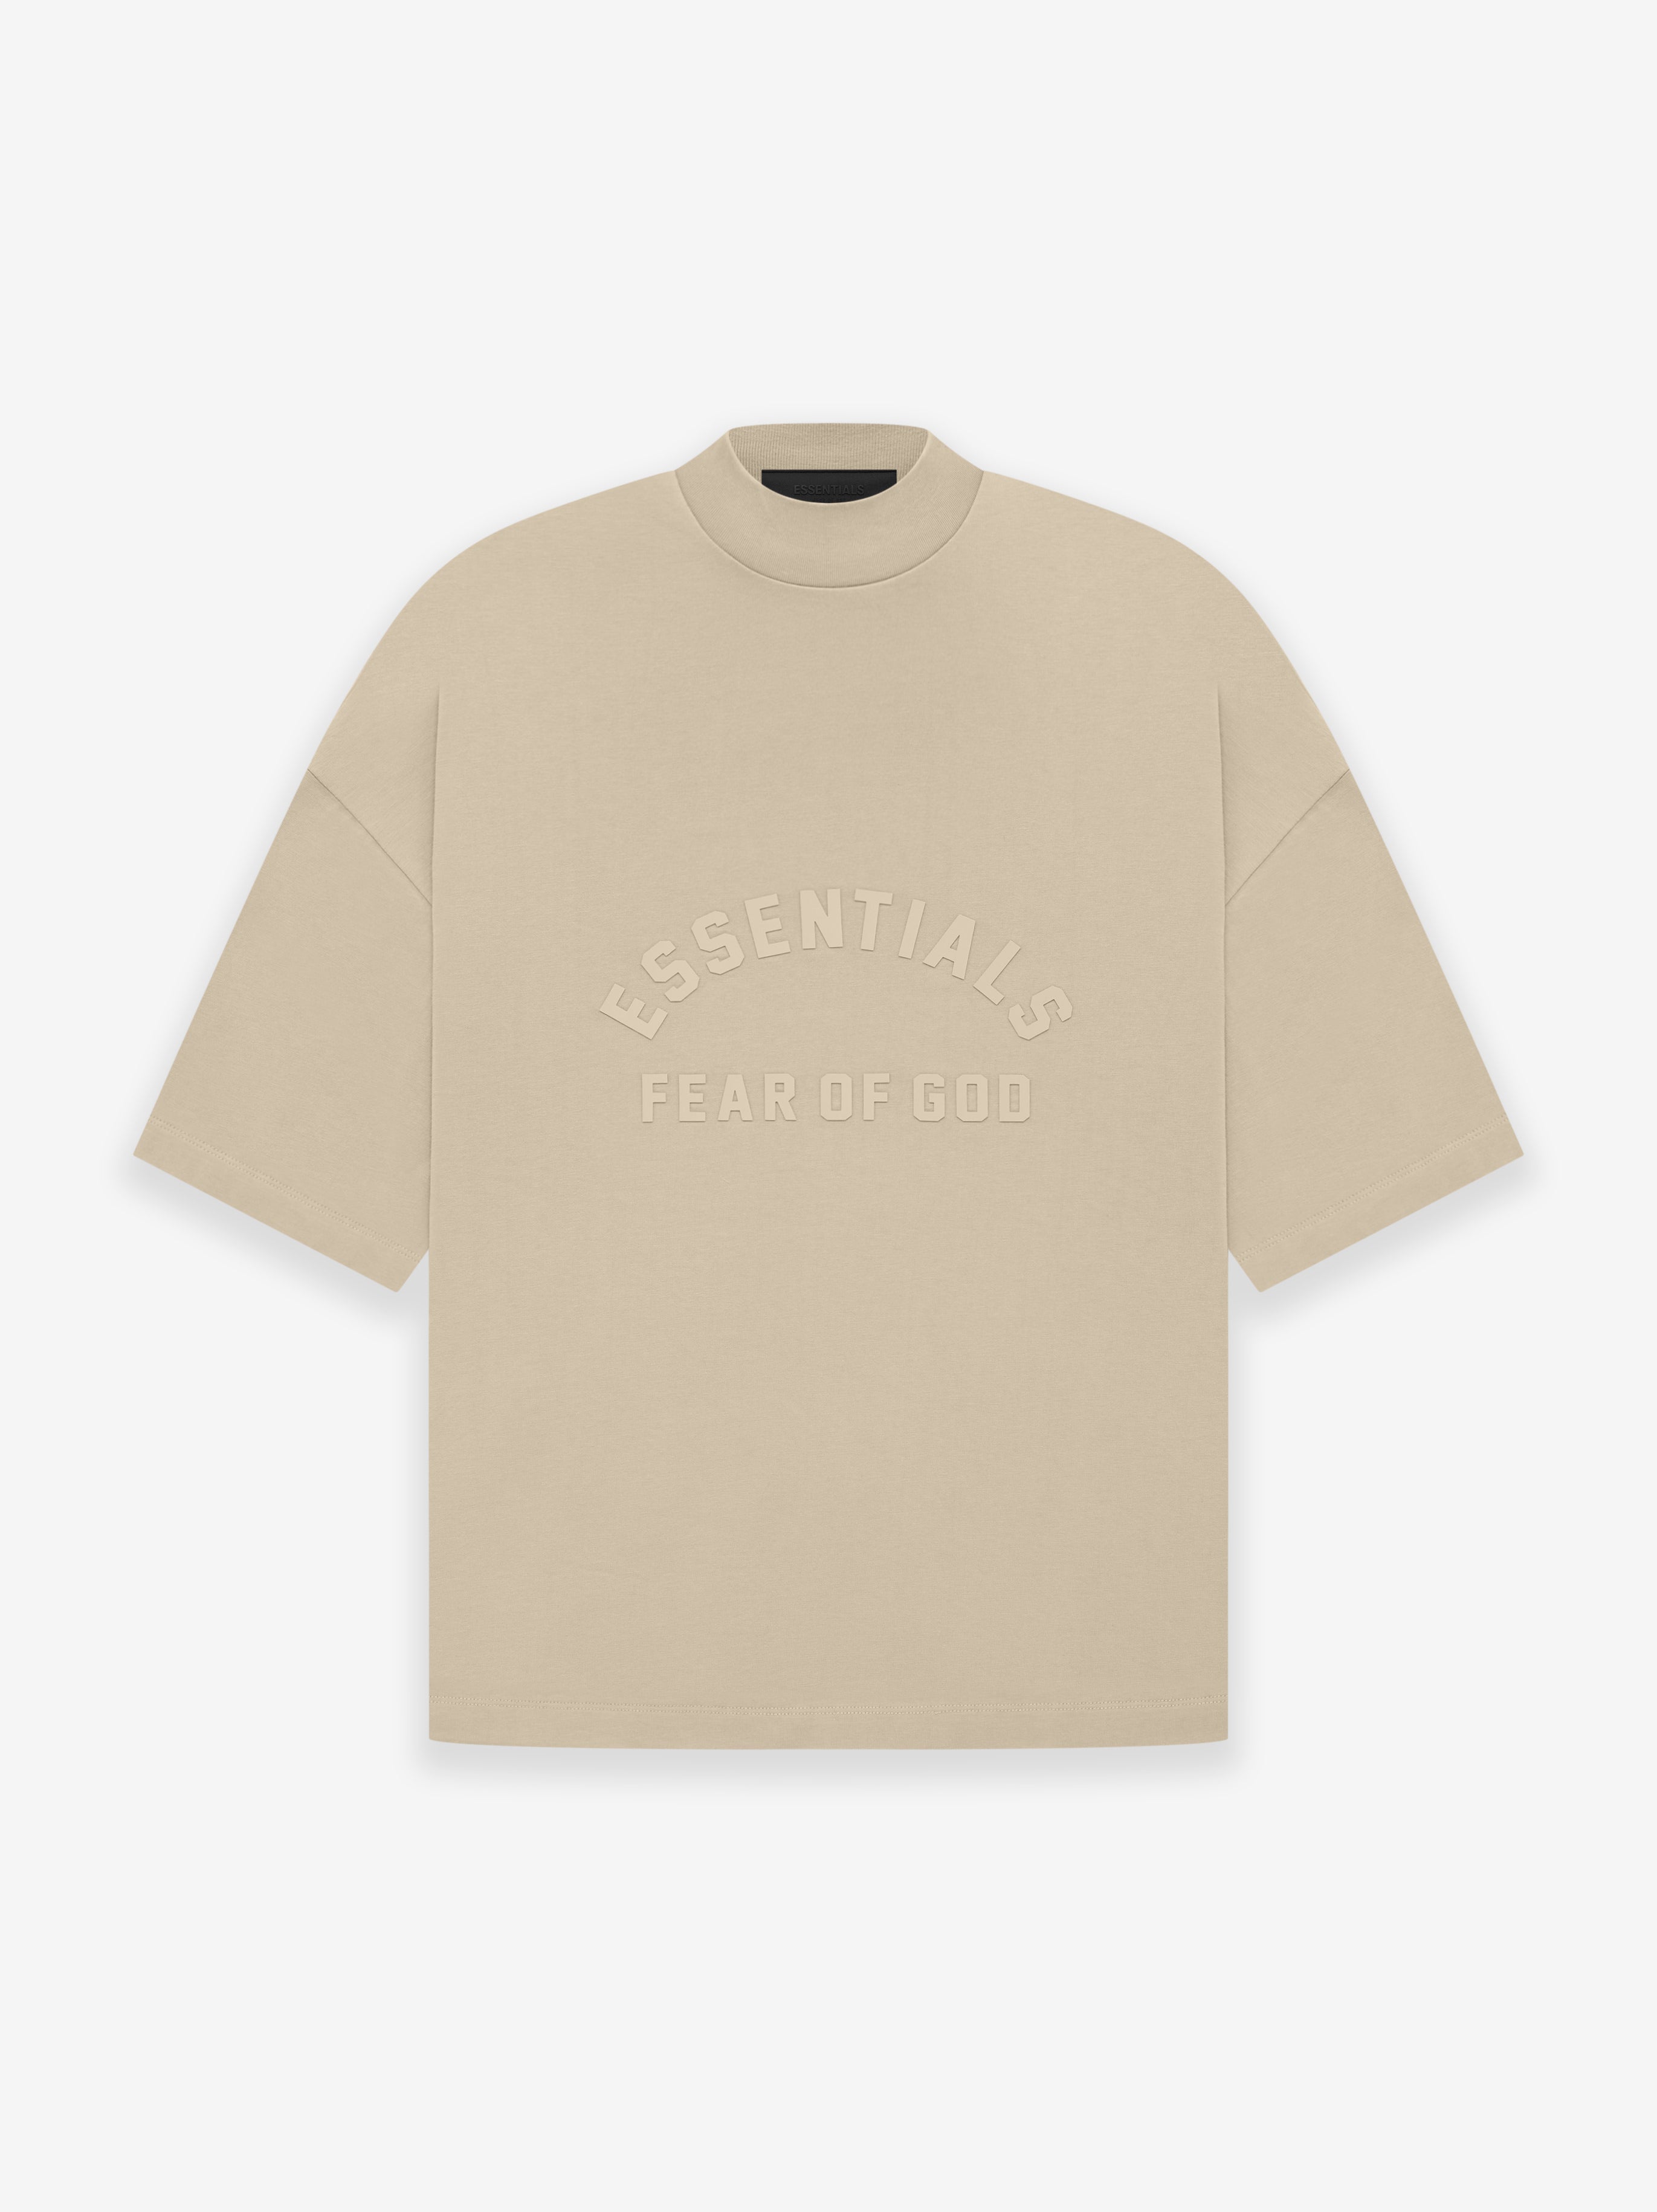 Fear of God Eternal Cotton Ss T-Shirt in Dusty Beige